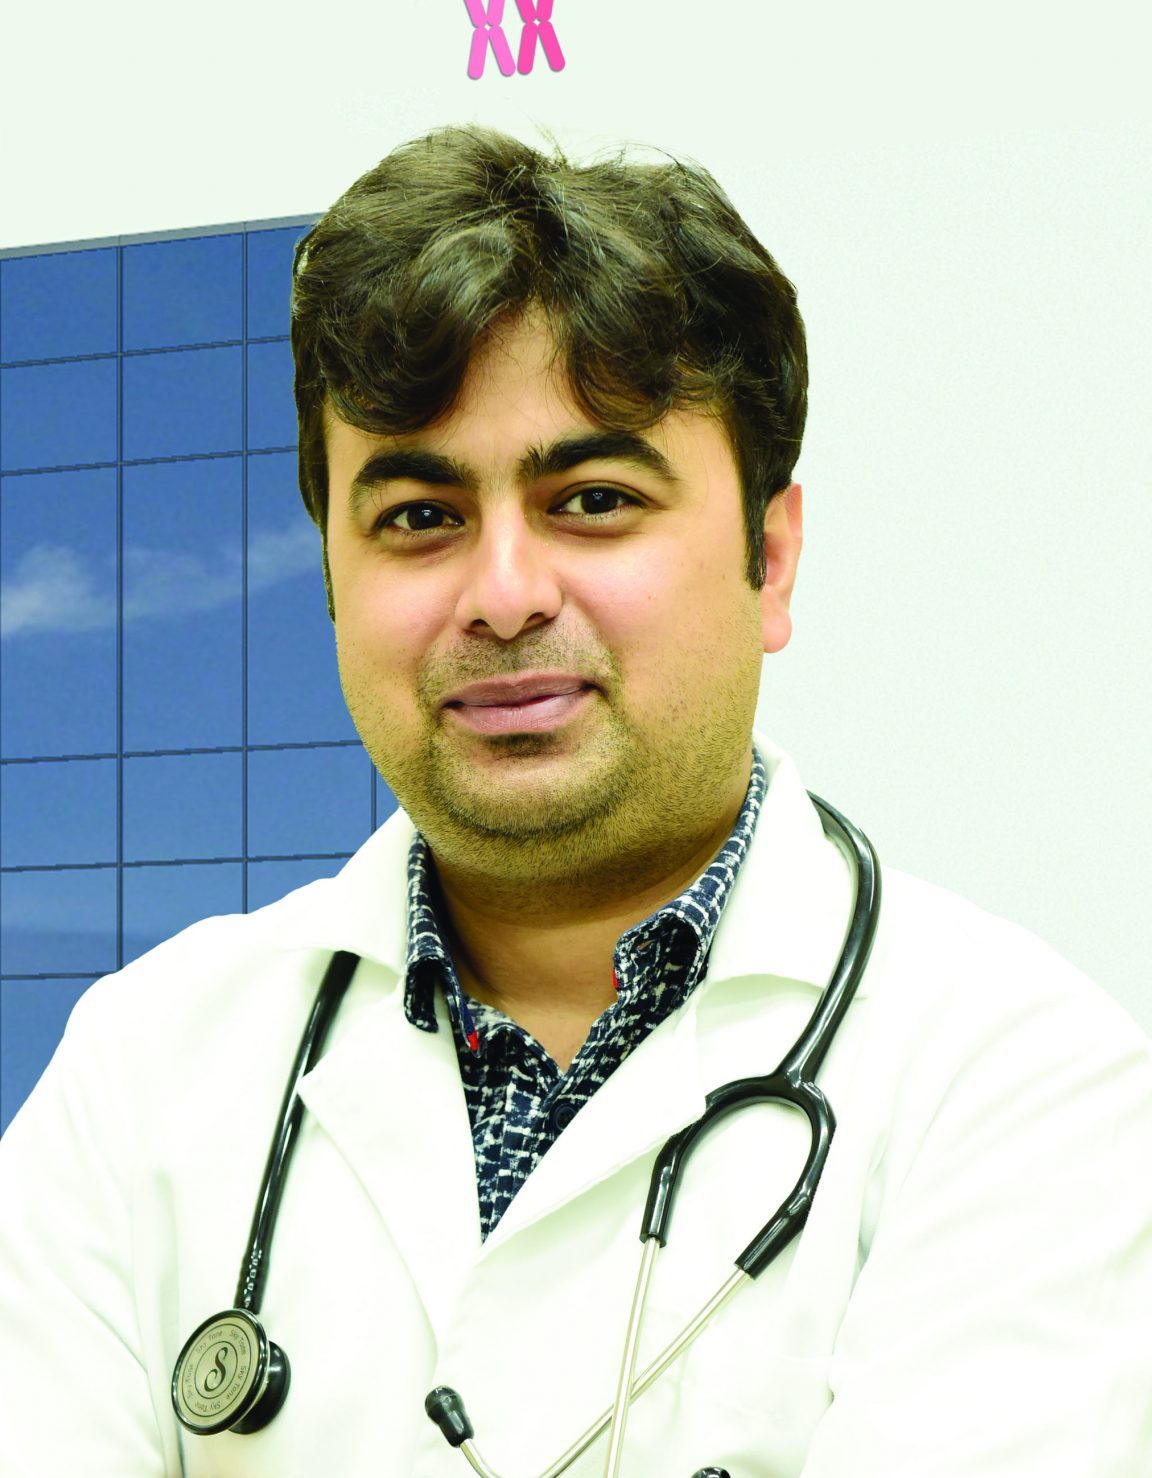 Dr. Saurabh Khanna